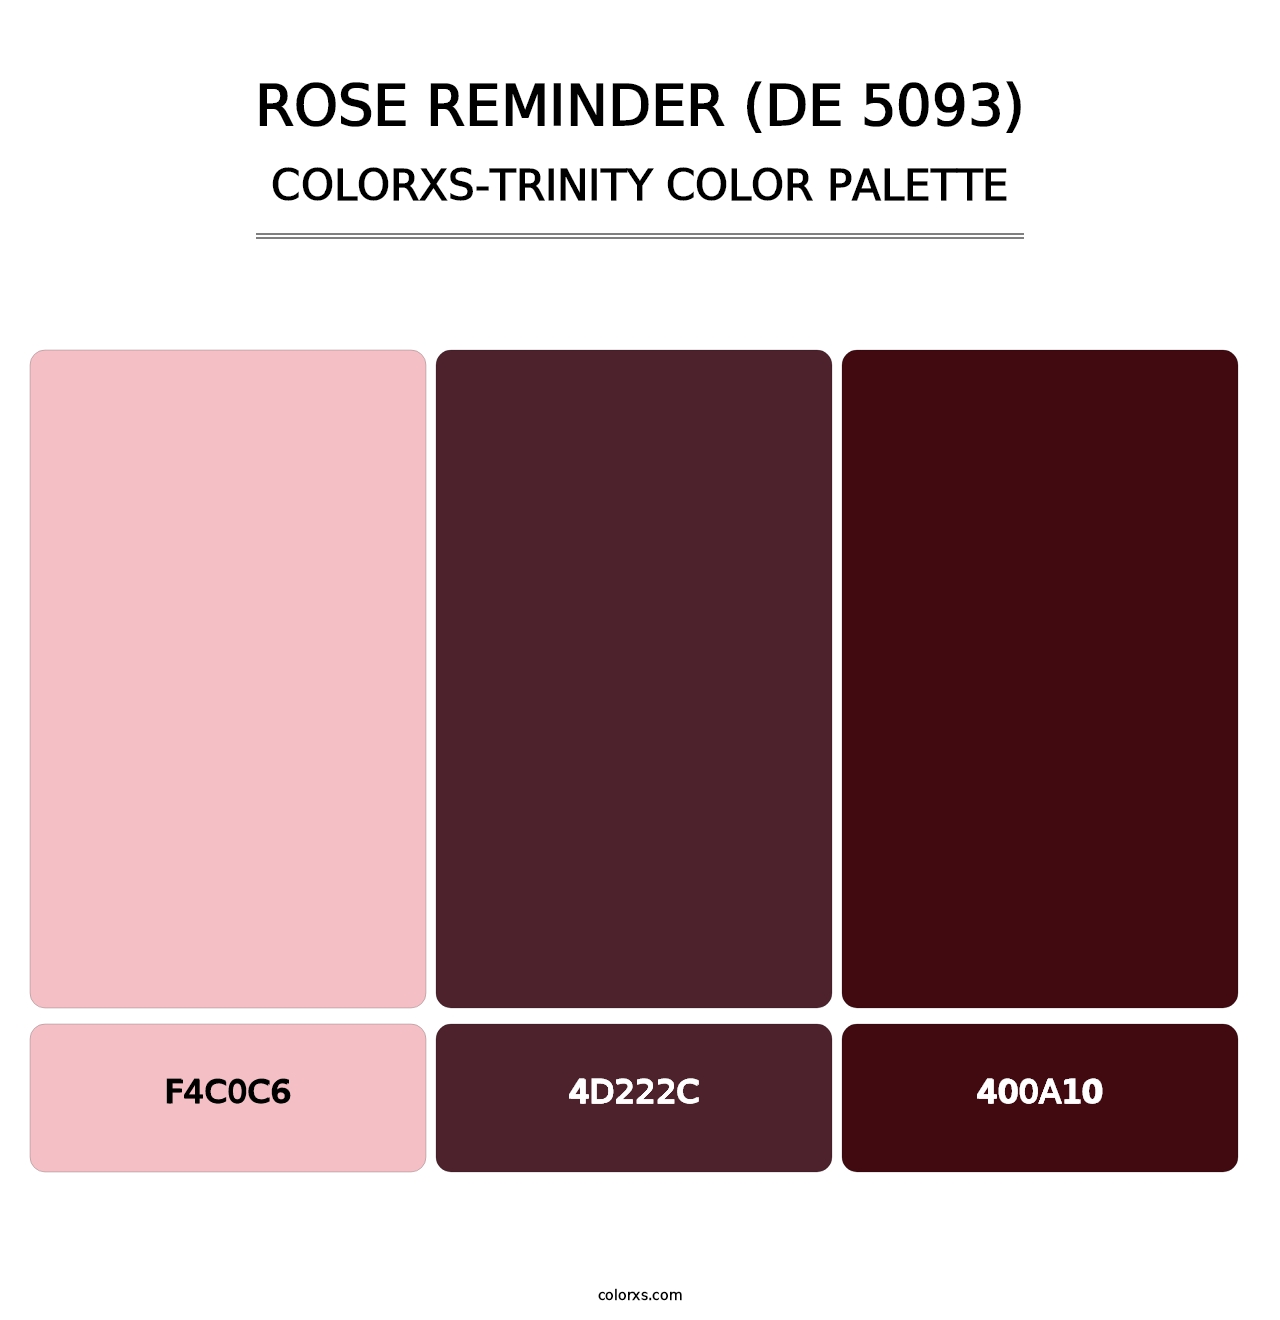 Rose Reminder (DE 5093) - Colorxs Trinity Palette